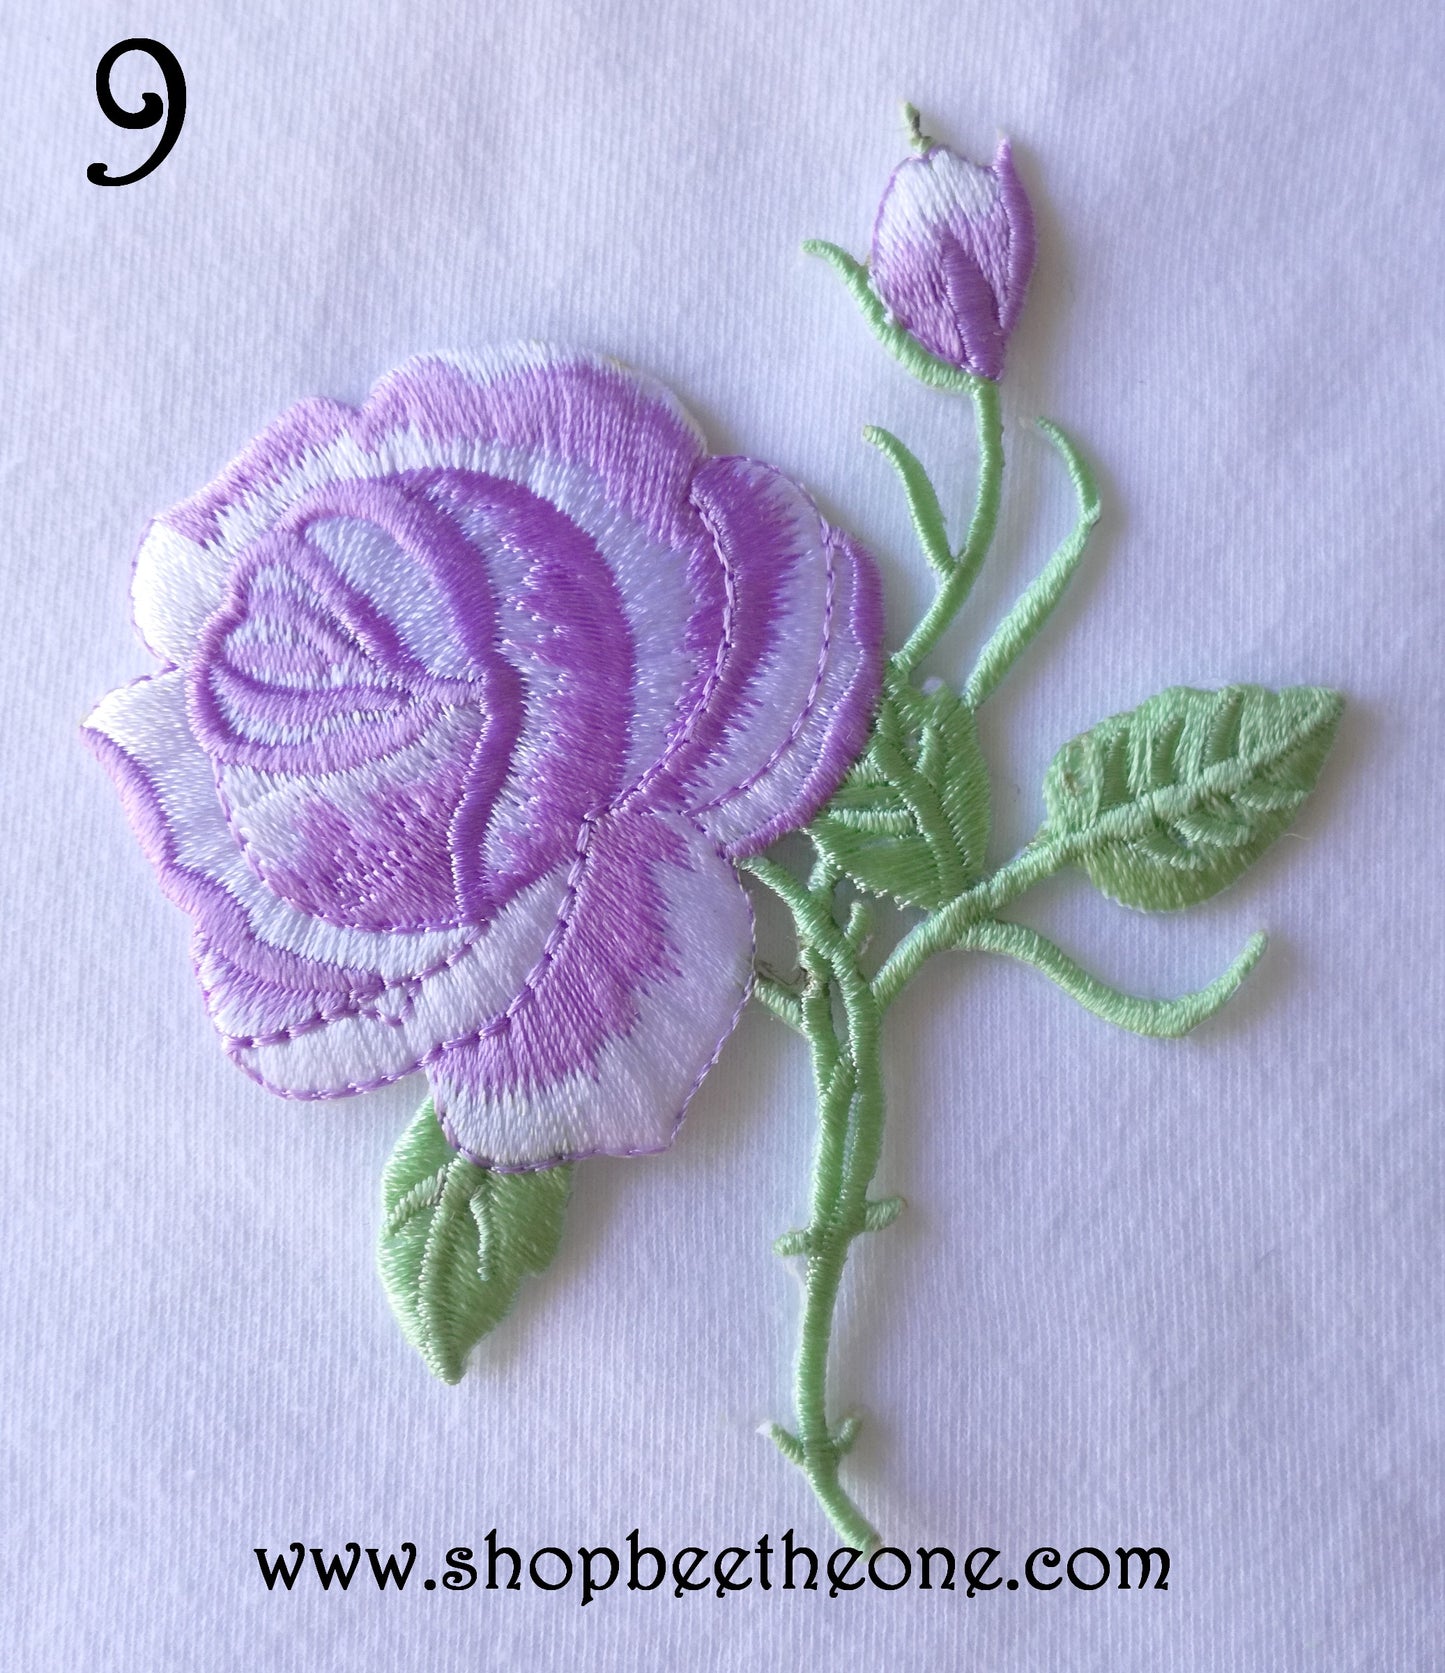 Applique écusson patch thermocollant fleur Grande Rose (à coudre ou repasser) - 11 coloris au choix